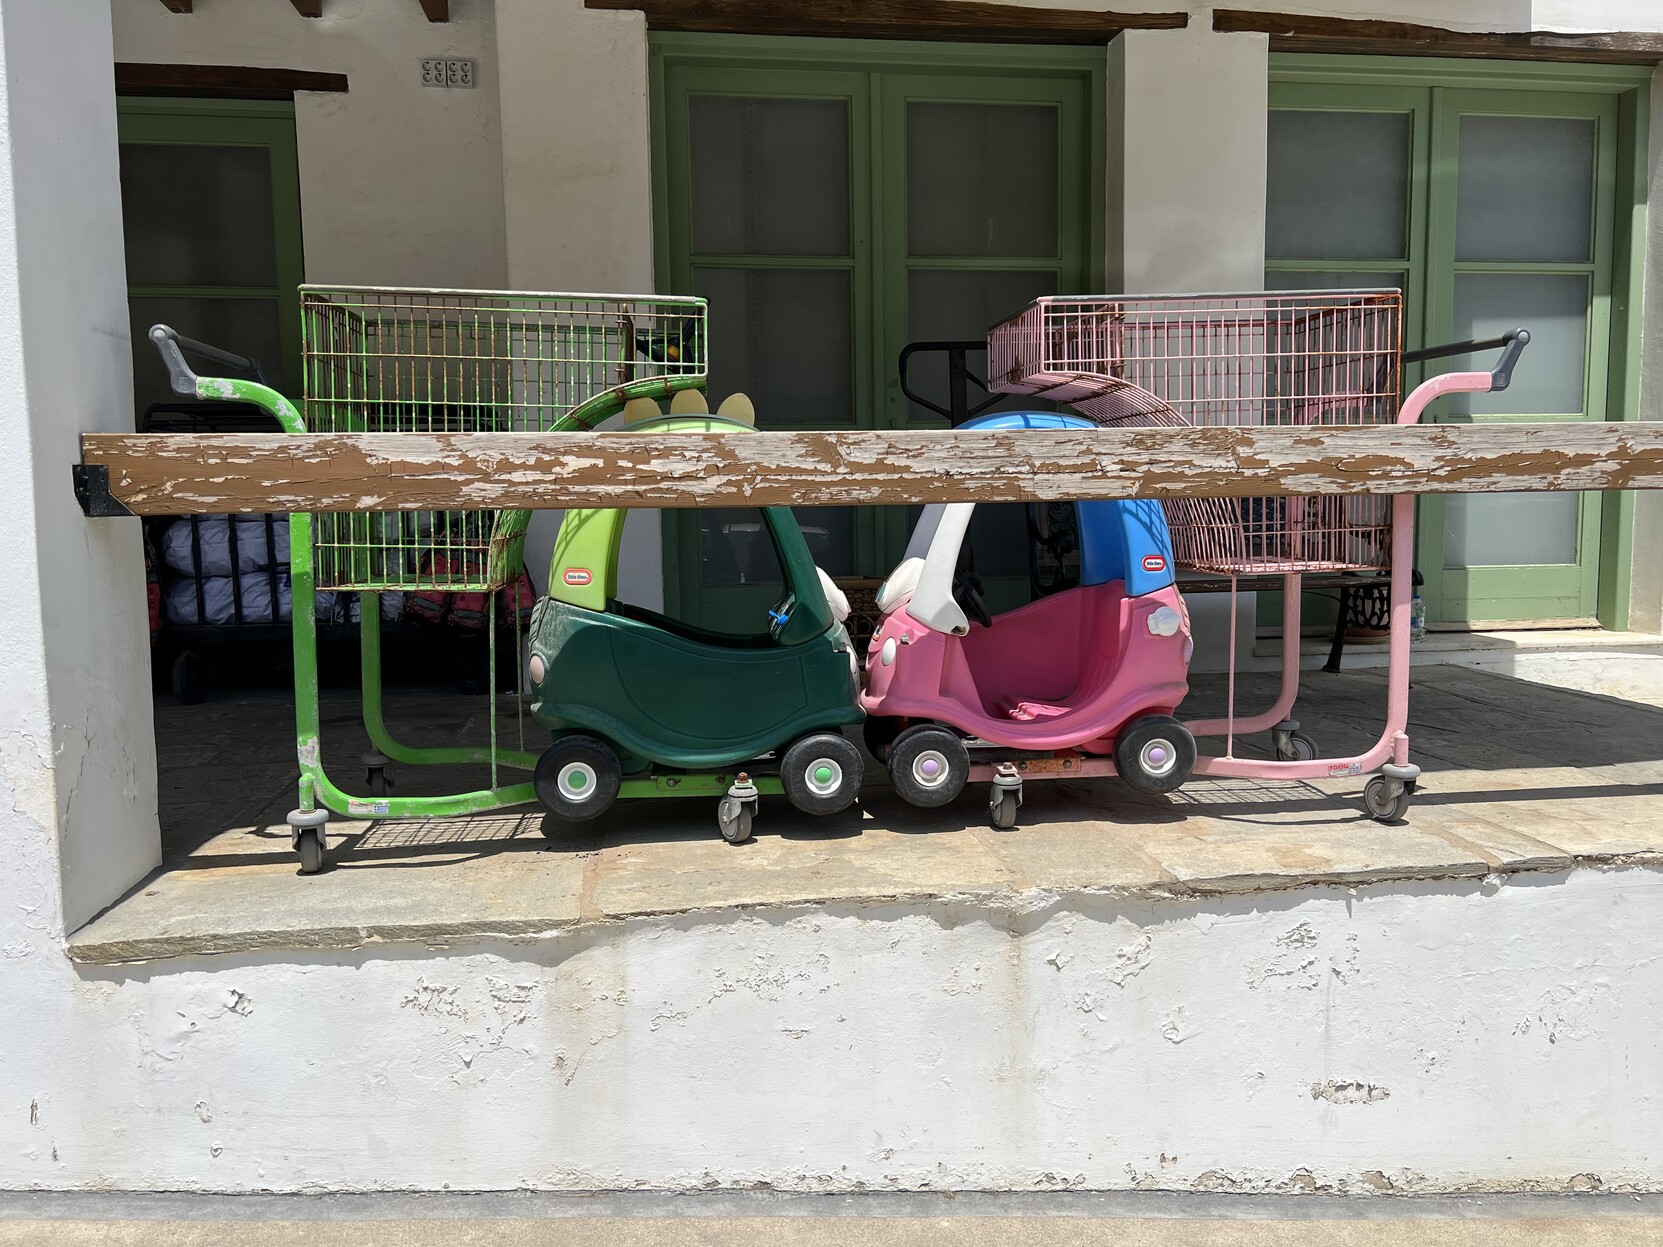 Zwei Einkaufswagen in denen kleine Plastikautos für Kinder vorne integriert sind. Die beiden Wägen stehe so zueinander, sodass es wirkt als wären die Autos zusammengestoßen. 